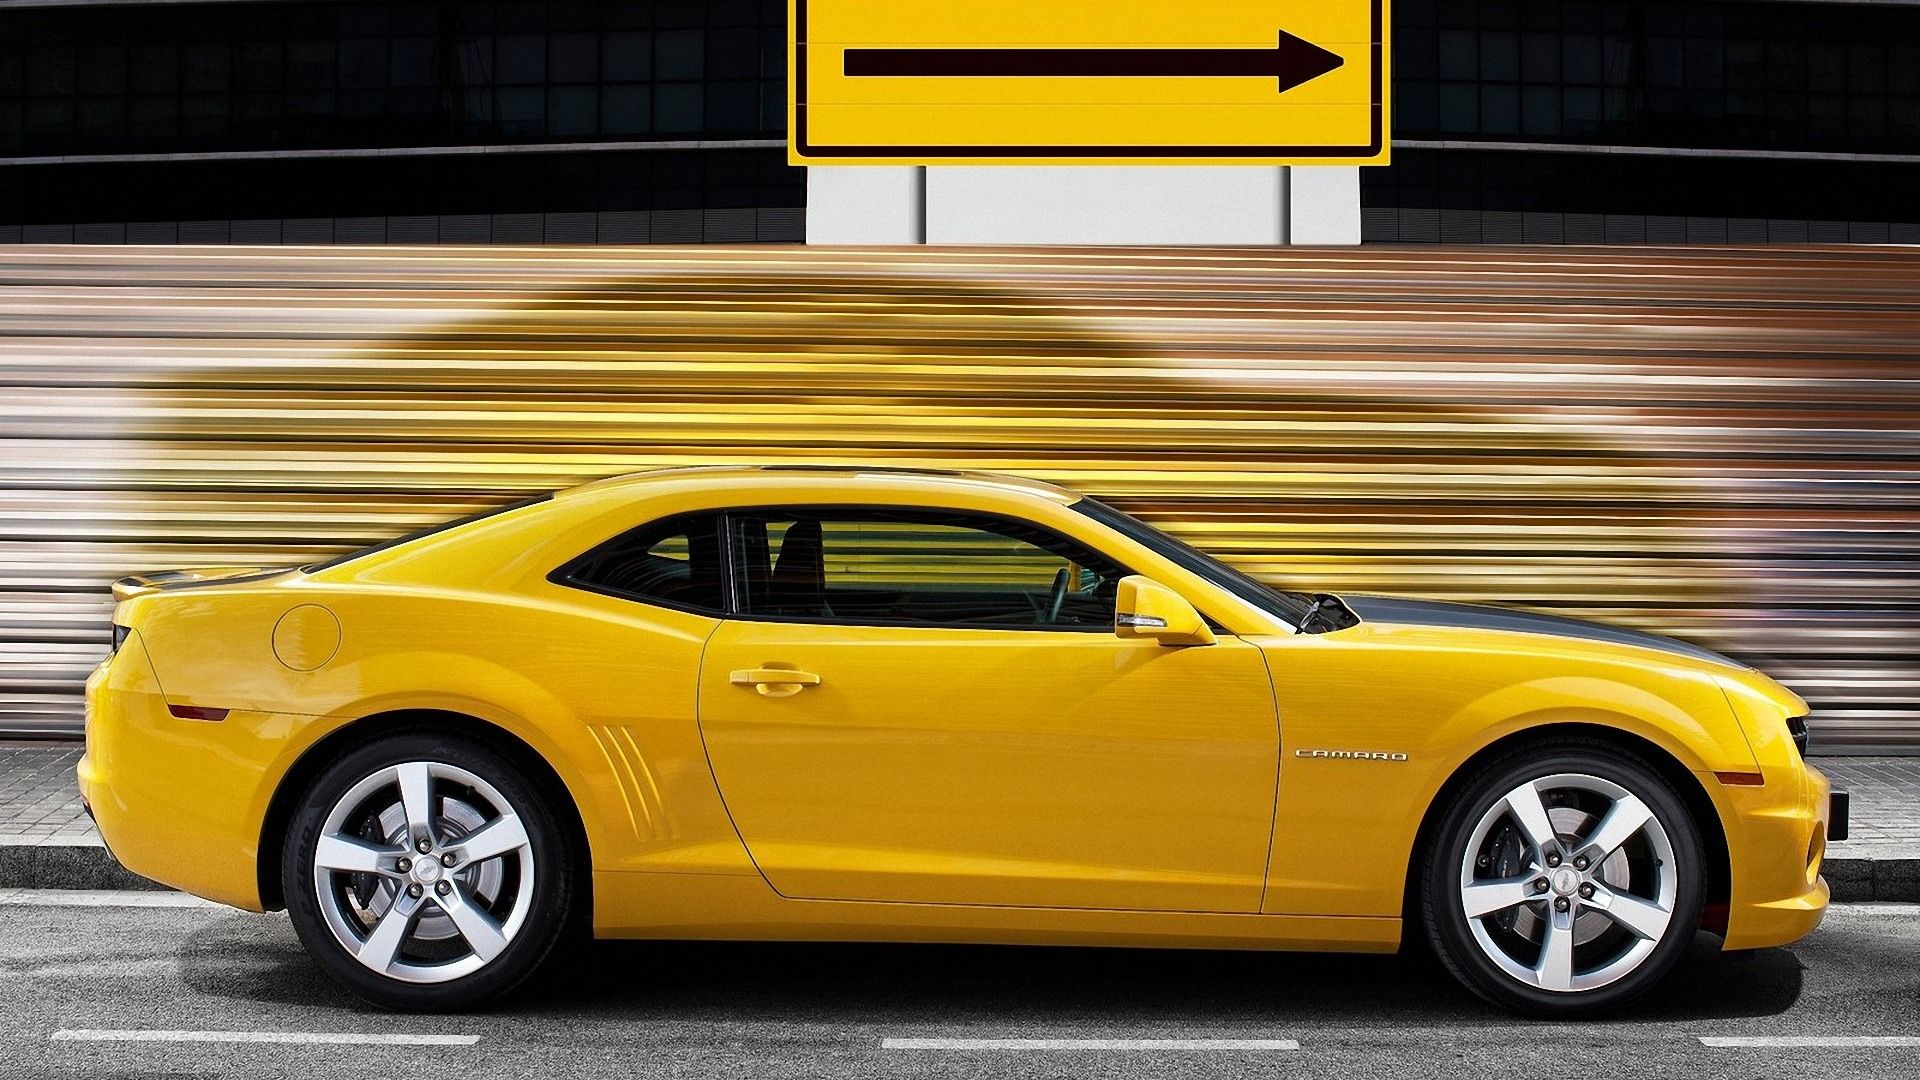 Yellow Camaro wallpaper. Yellow Camaro